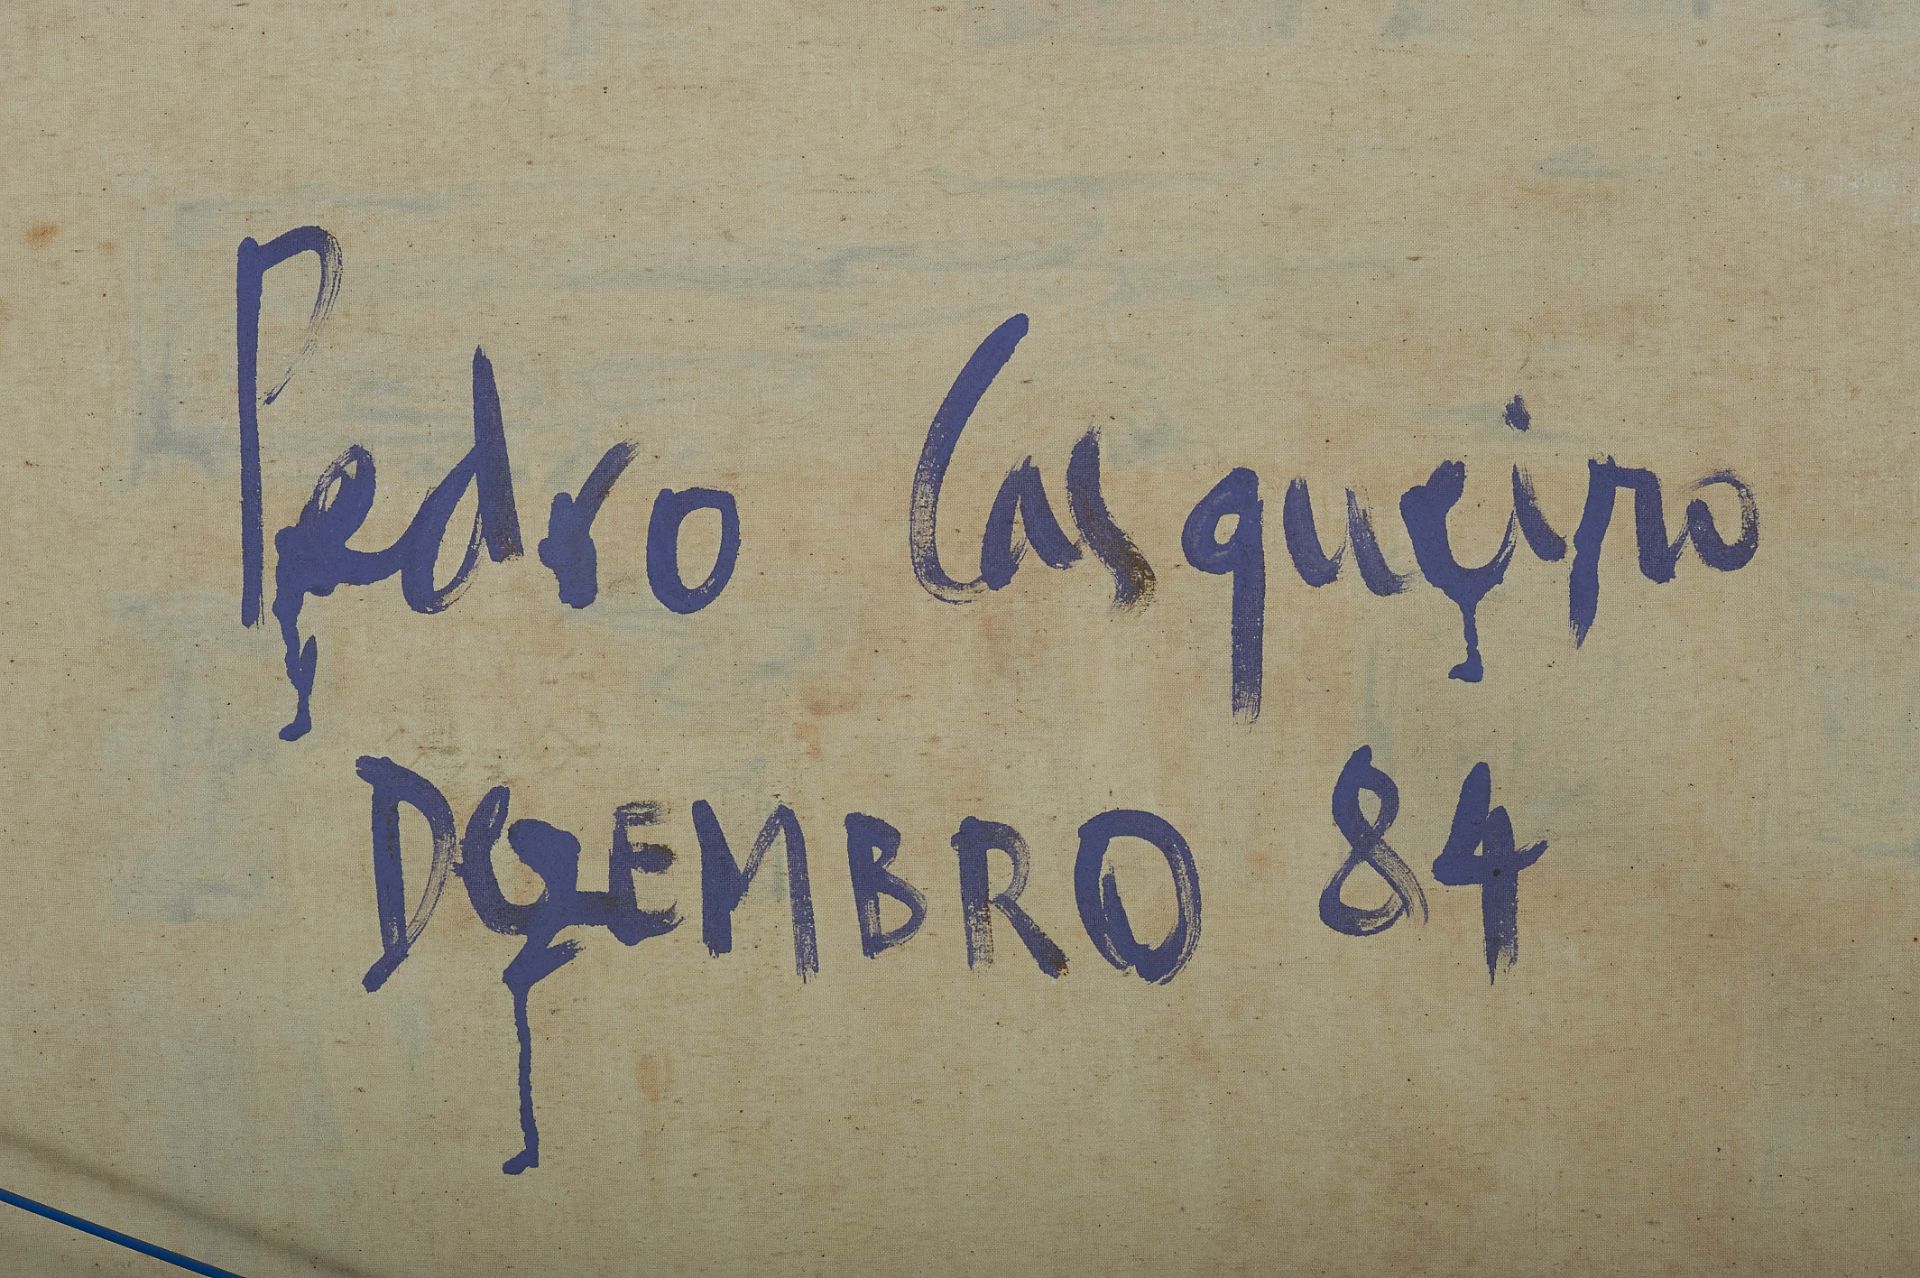 PEDRO CASQUEIRO - NASC. 1959 - Image 2 of 2